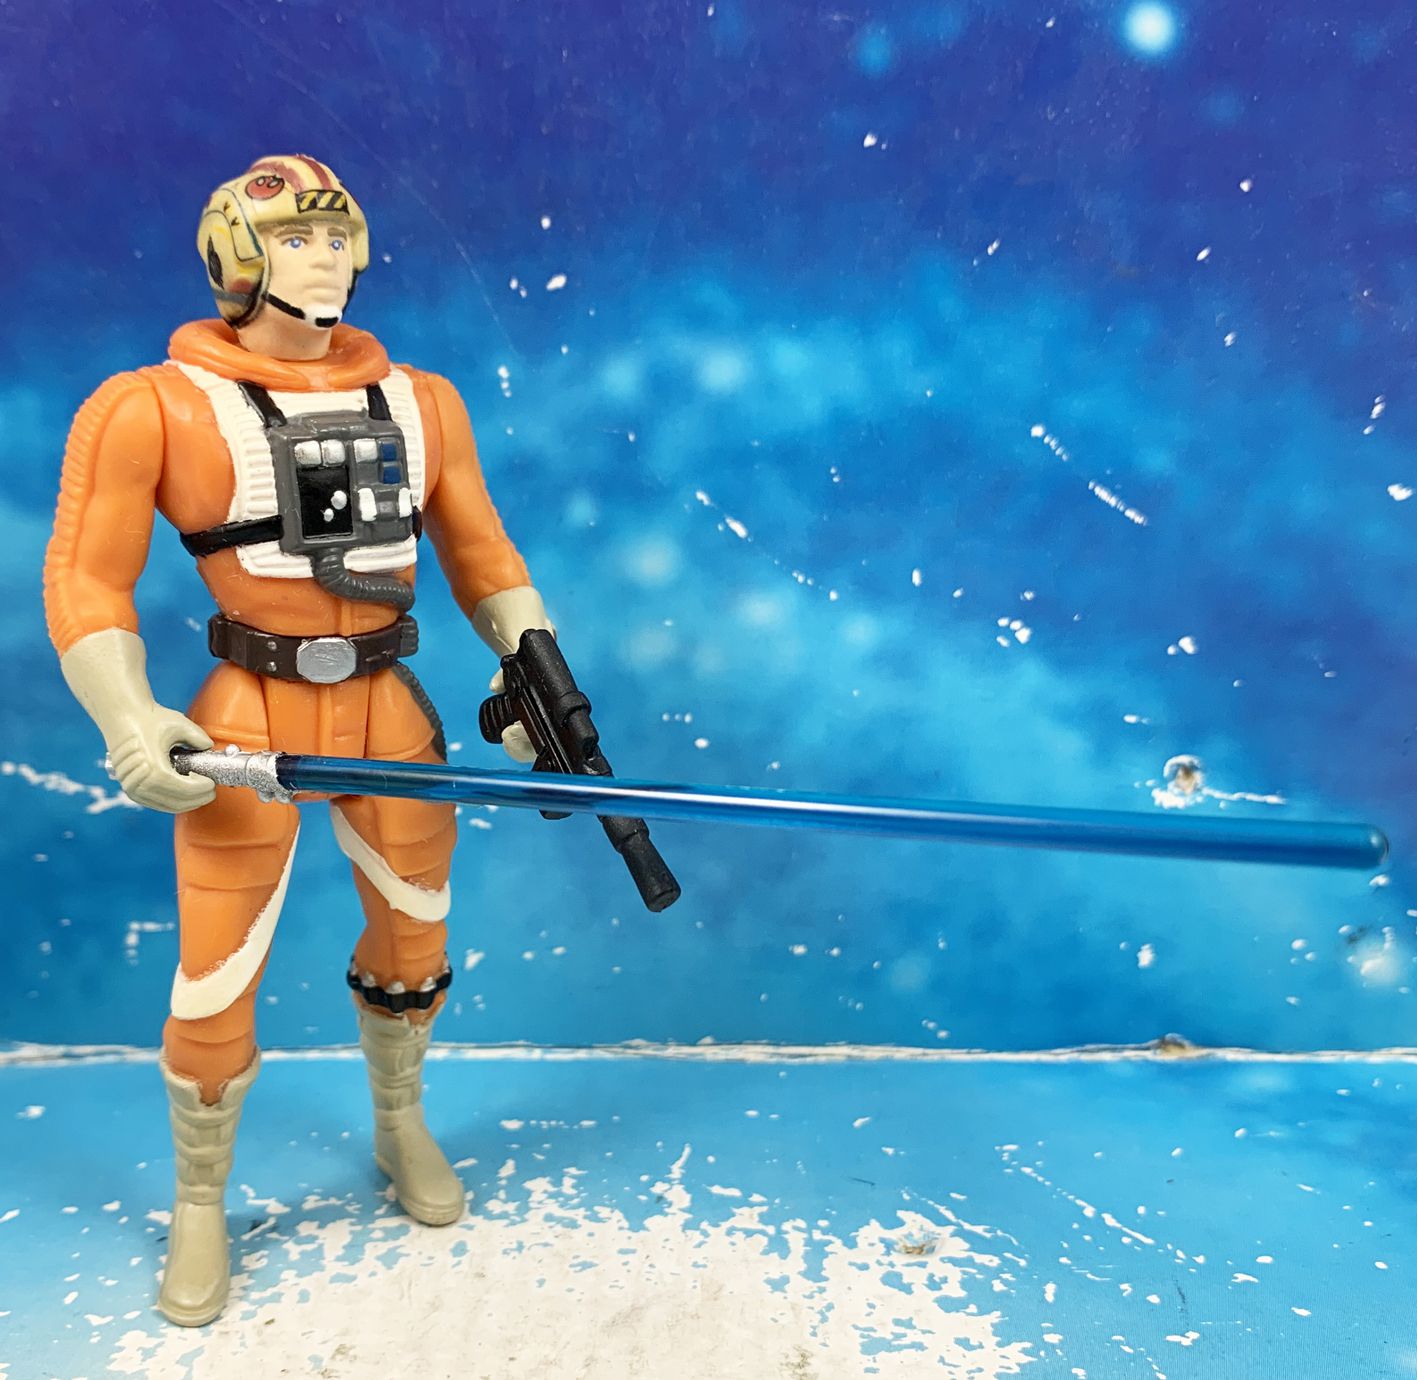 Star Wars POTF Luke Skywalker X-Wing Pilot 1995 3.75" Action Figure Loose 